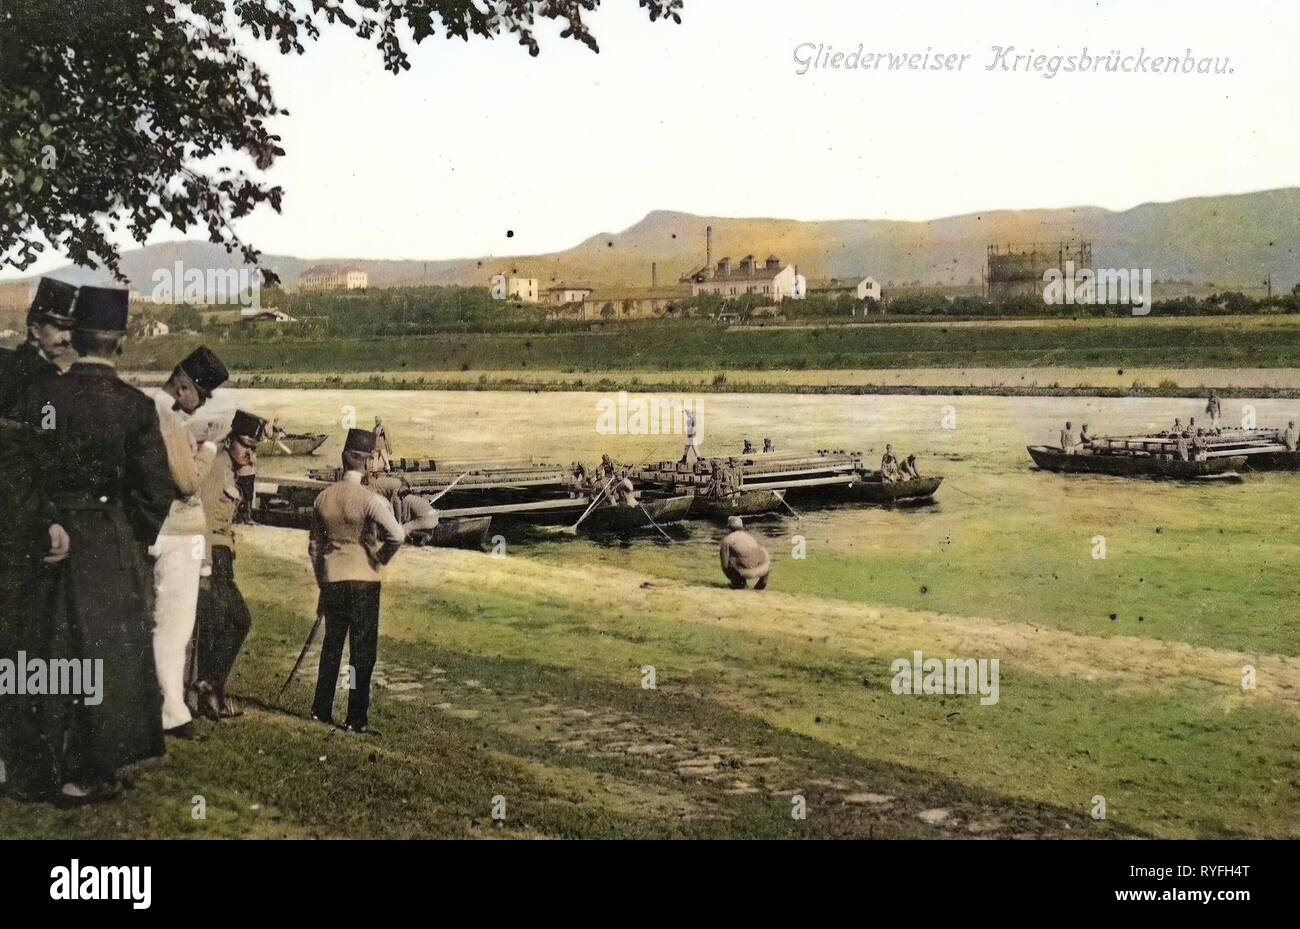 Gasometer, Pontonbrücken, österreichisch-ungarischen Armee, Geschichte der Elbe, 1910 Postkarten, 1910, Aussig, Gliederweiser Kriegsbrückenbau, Tschechische Republik Stockfoto